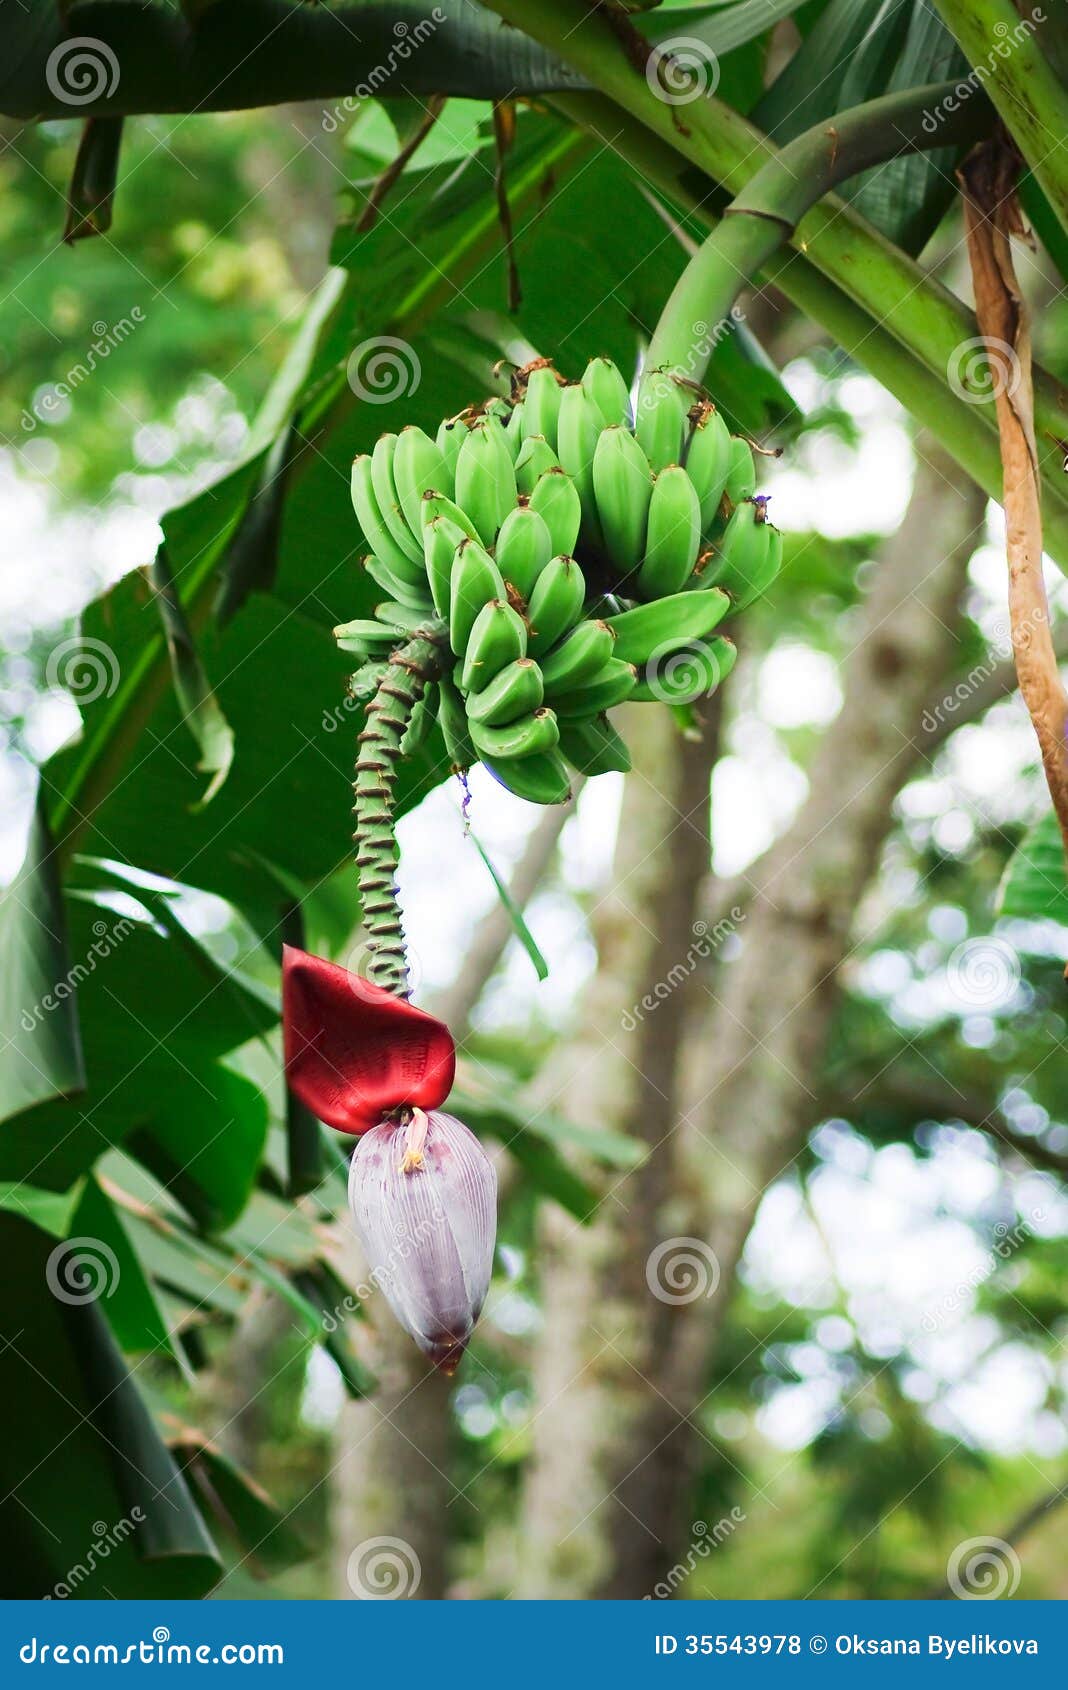 banana bunch (musa acuminata)